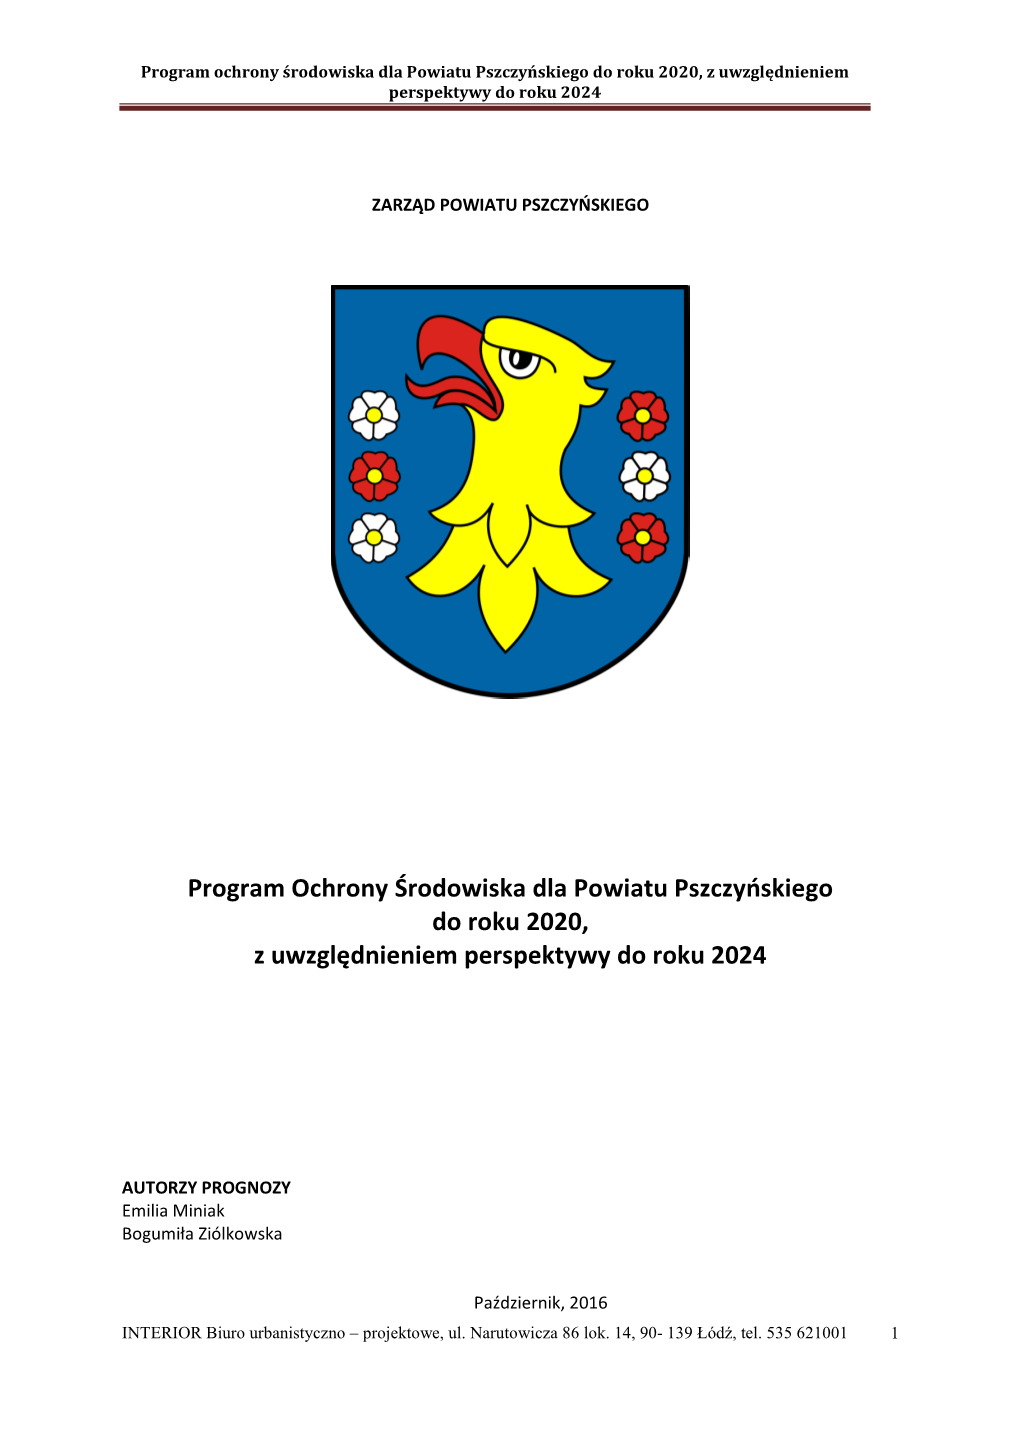 Program Ochrony Środowiska Dla Powiatu Pszczyńskiego Do Roku 2020, Z Uwzględnieniem Perspektywy Do Roku 2024